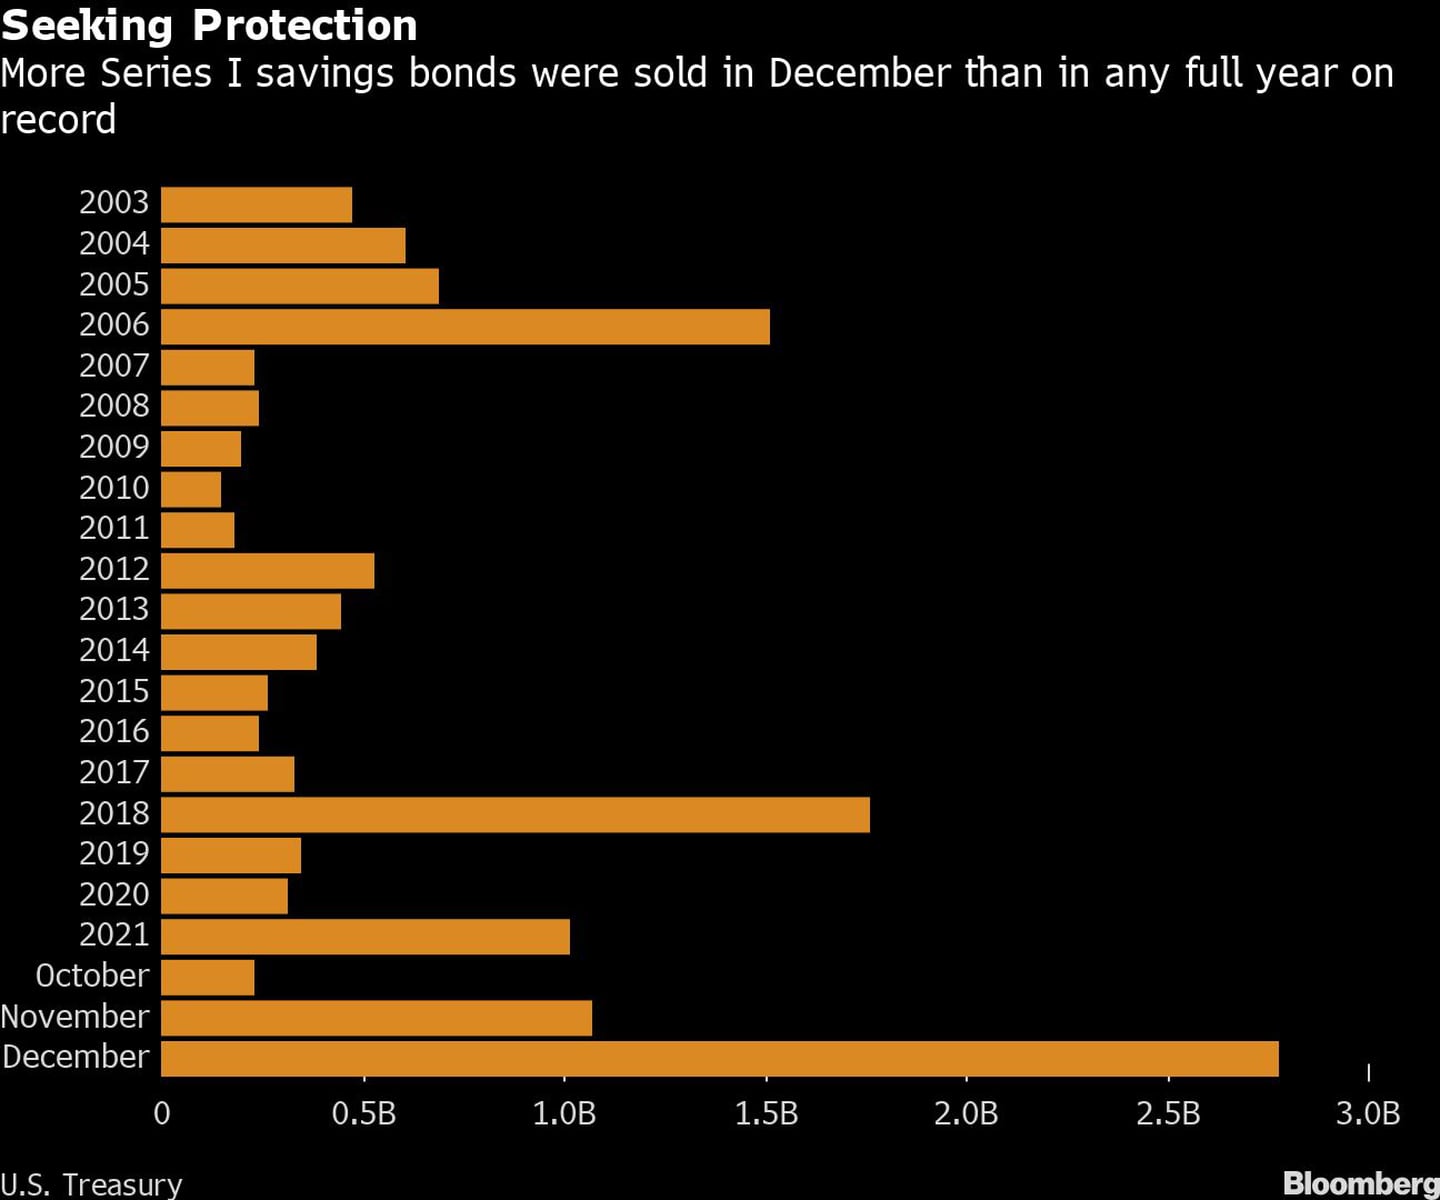 En busca de protección
En diciembre se vendieron más bonos de ahorro de la serie I que en cualquier año completo registradodfd